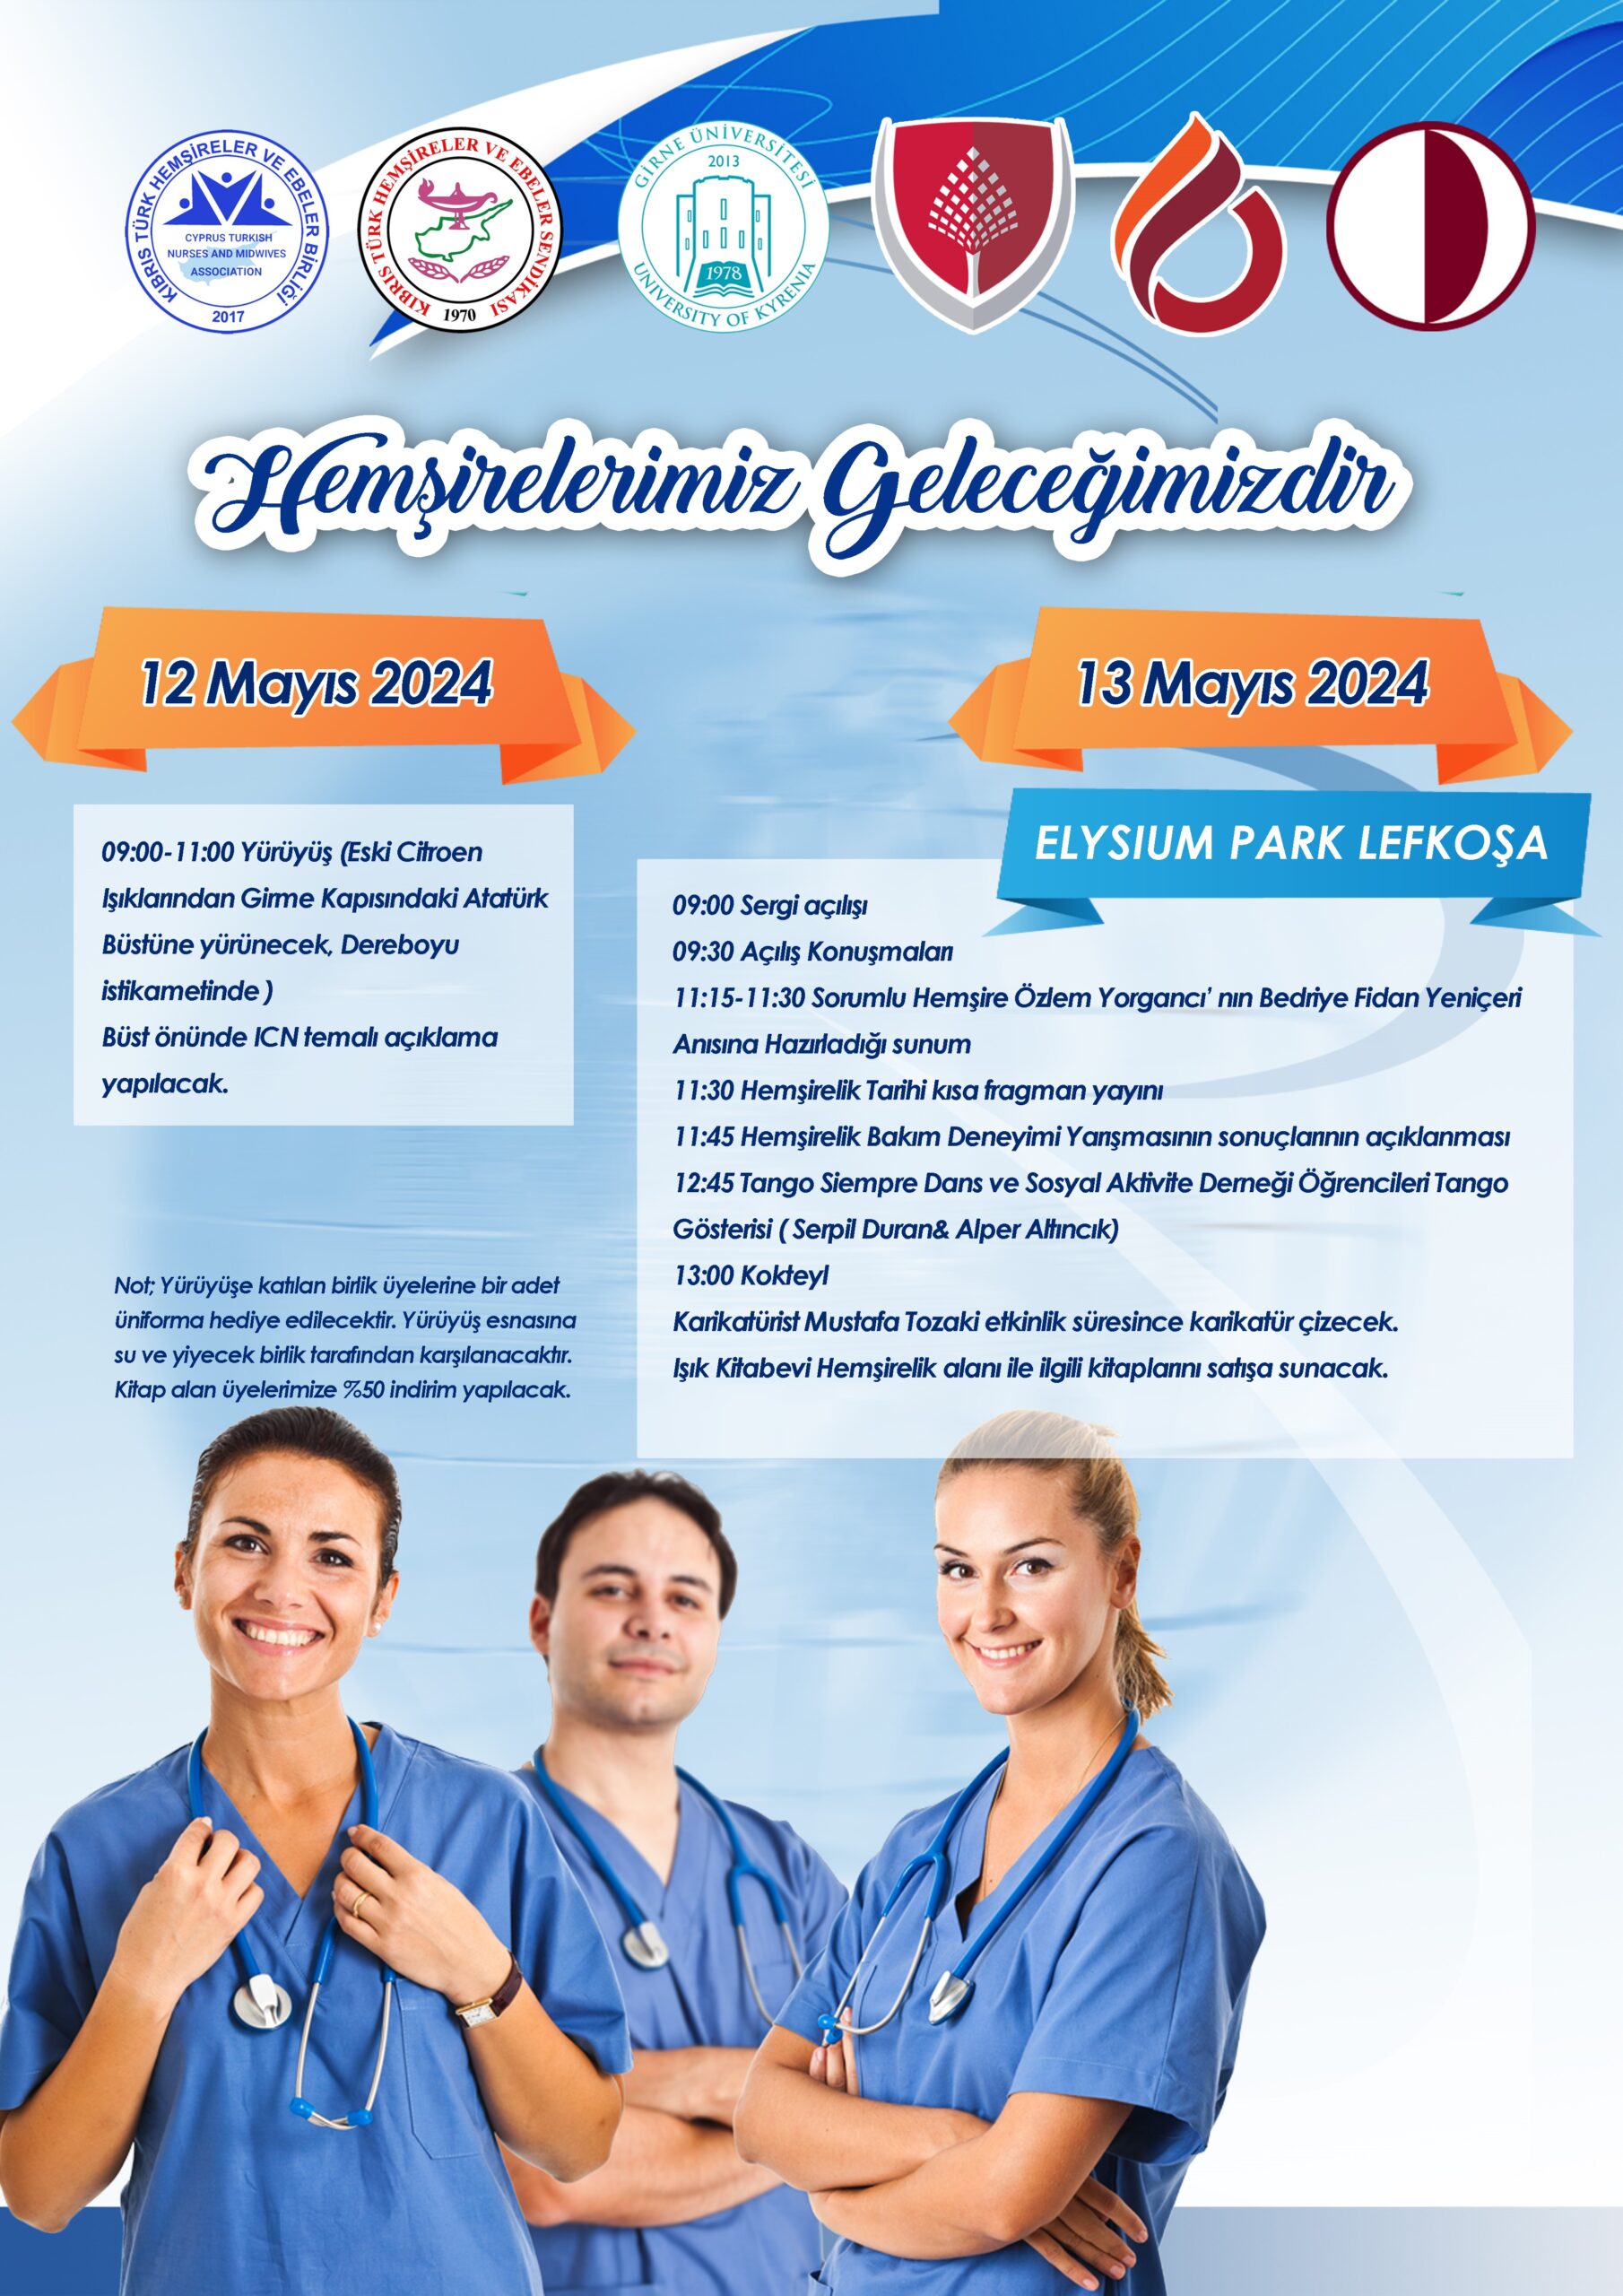 “12 Mayıs Dünya Hemşireler Günü” nedeniyle etkinlikler düzenlenecek